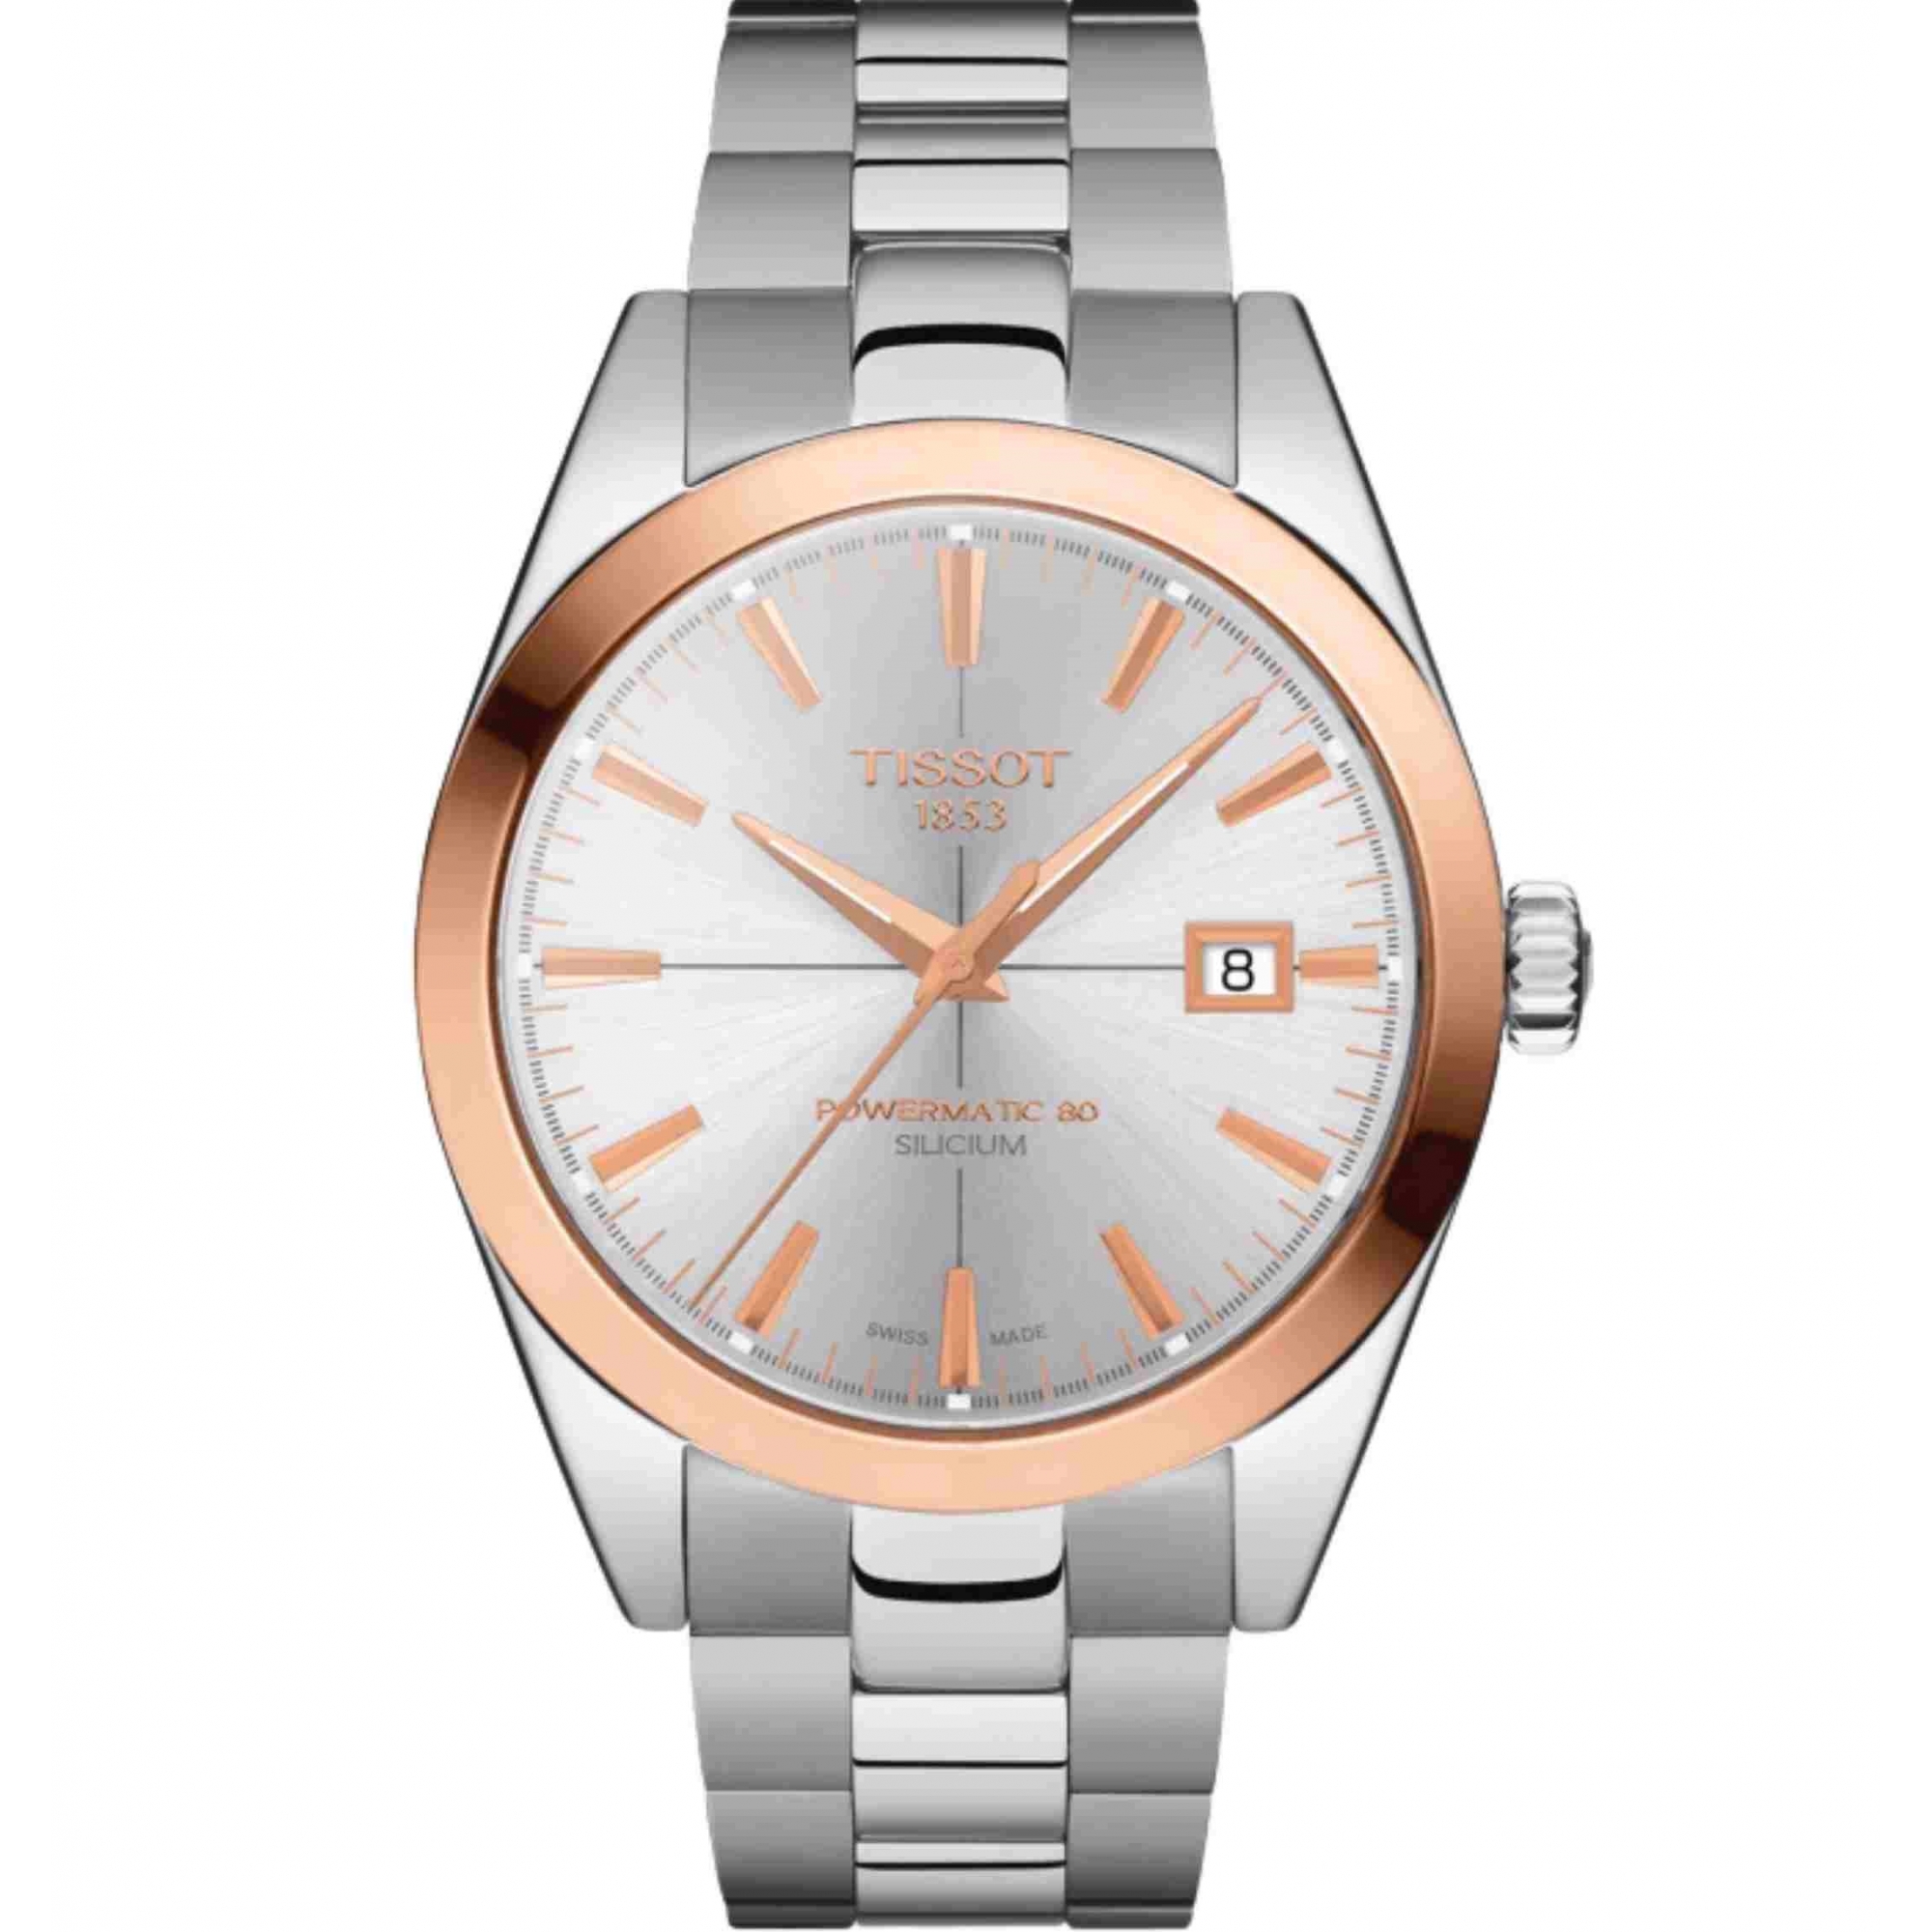 Relógio Tissot Gentleman Powermatic 80 Silicium 18K Ouro Rosa Bezel T927.407.41.031.00